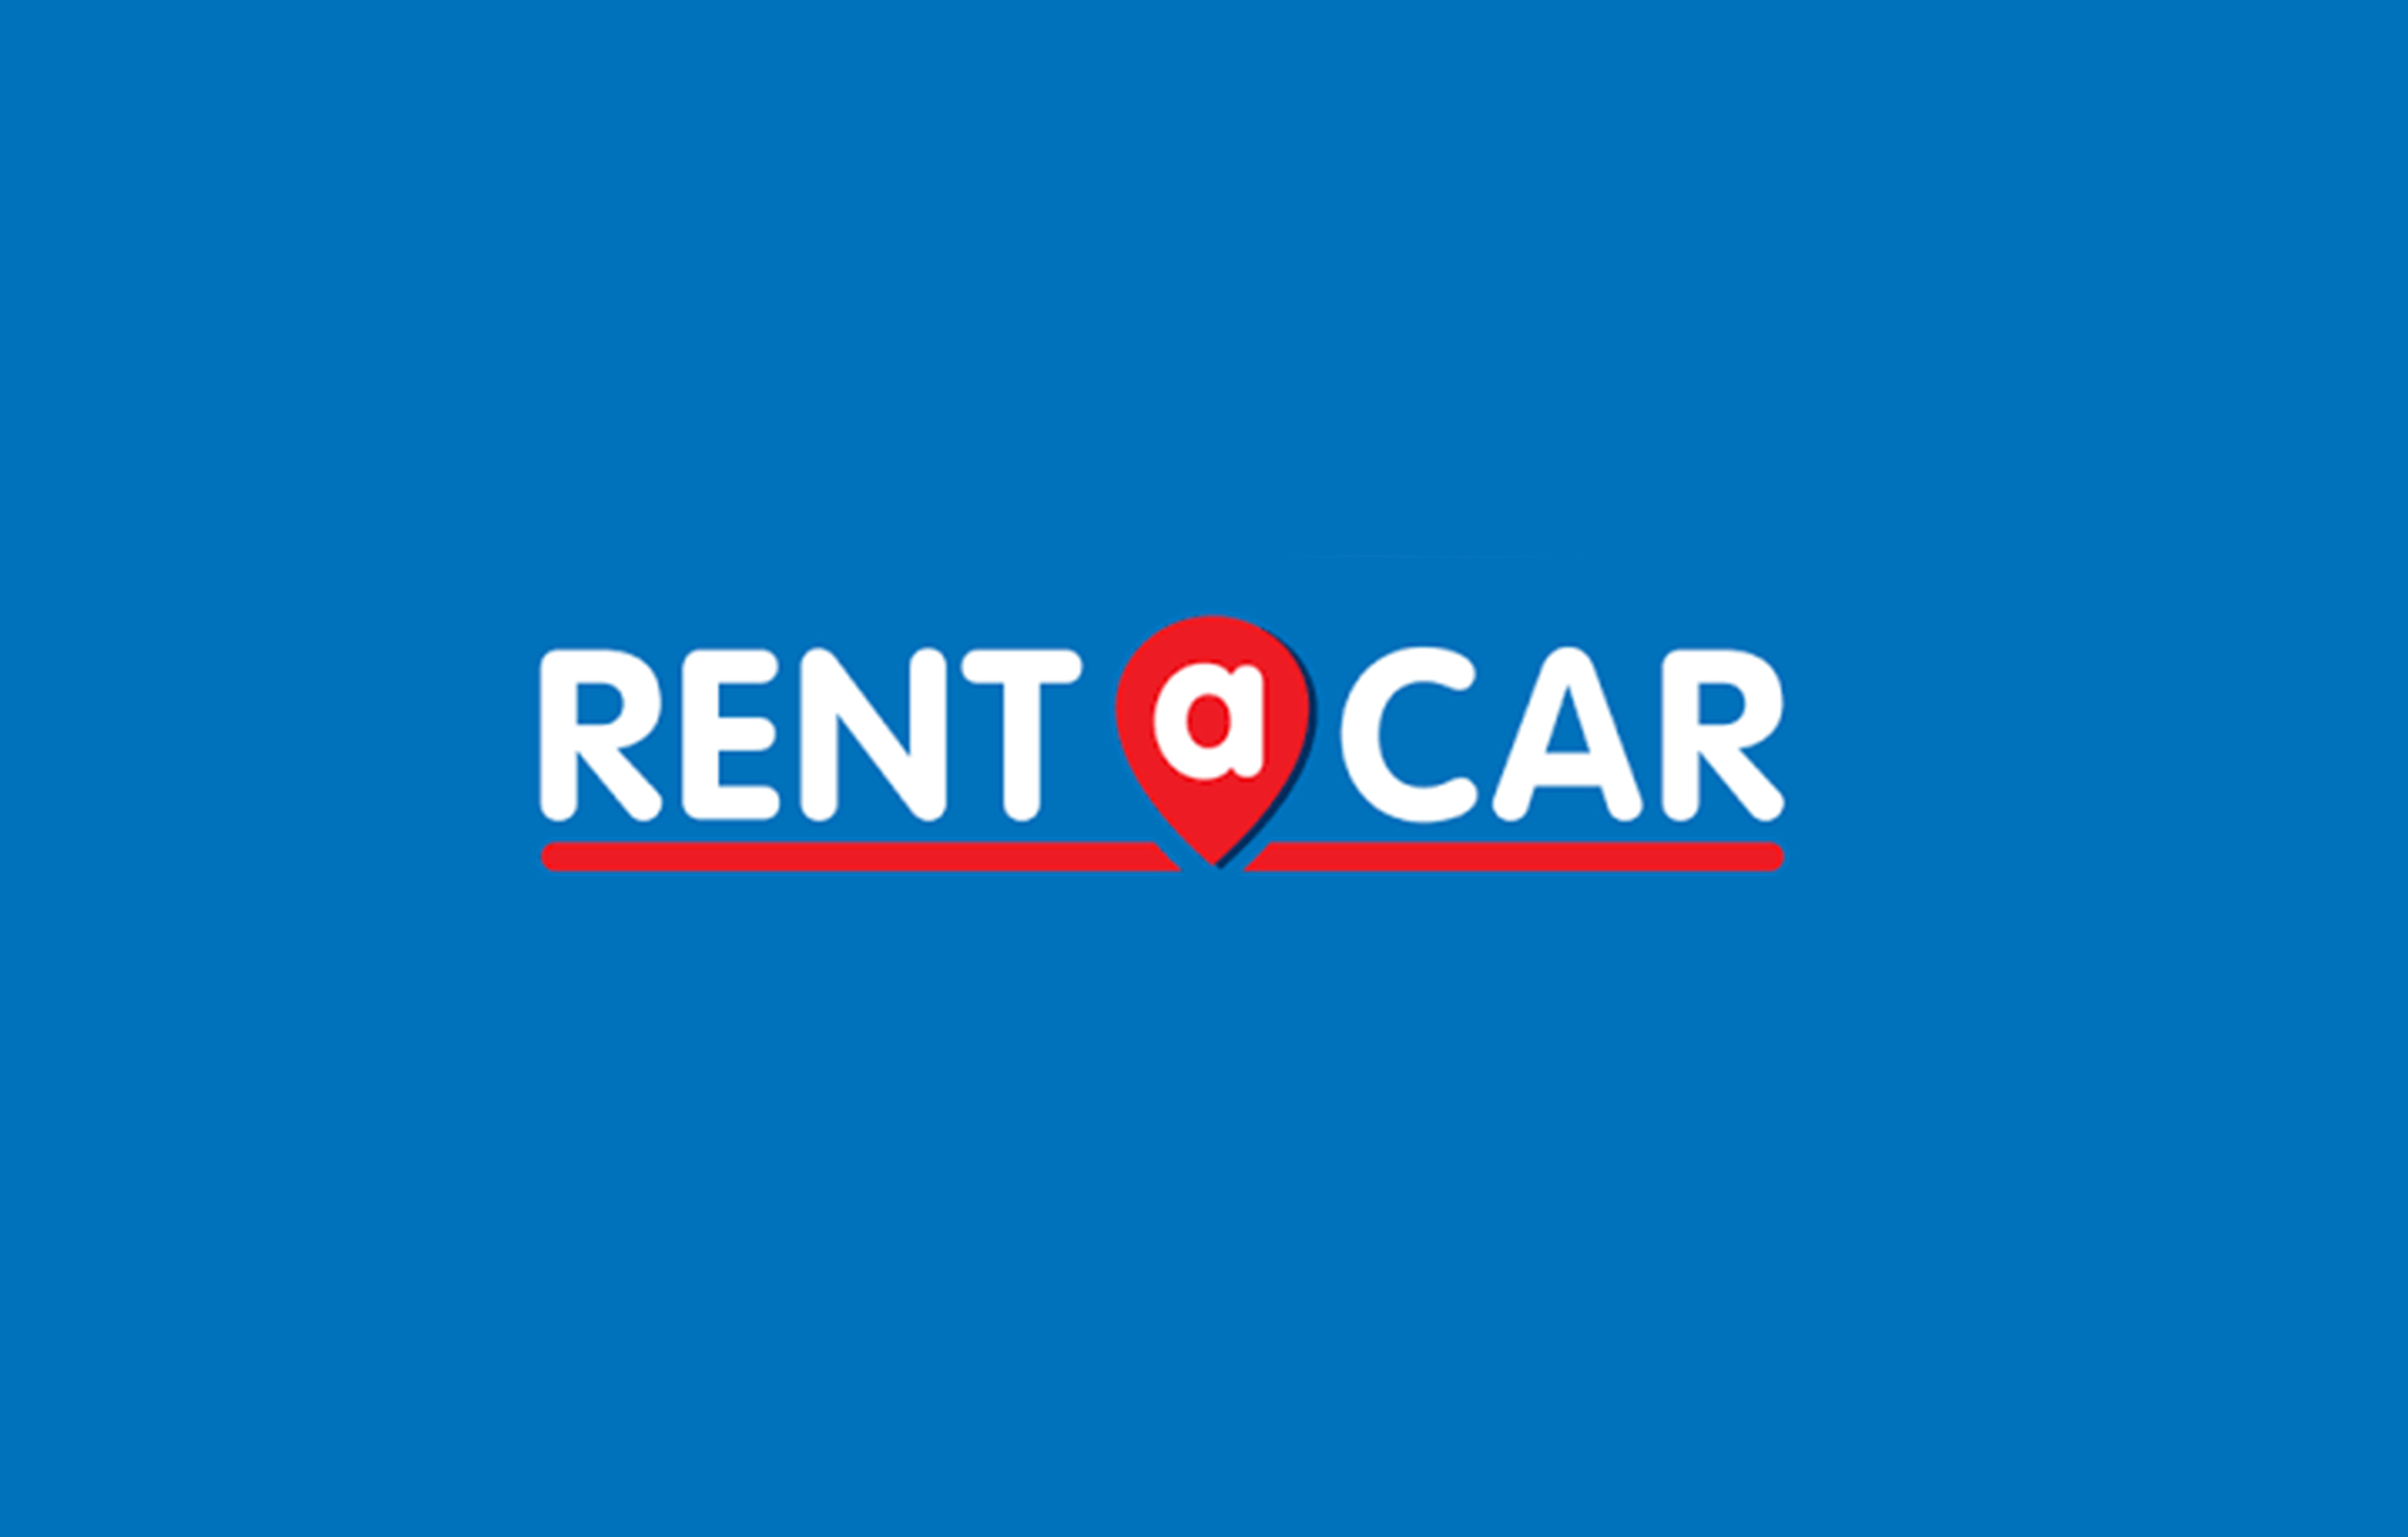 rent a car in porto portugal